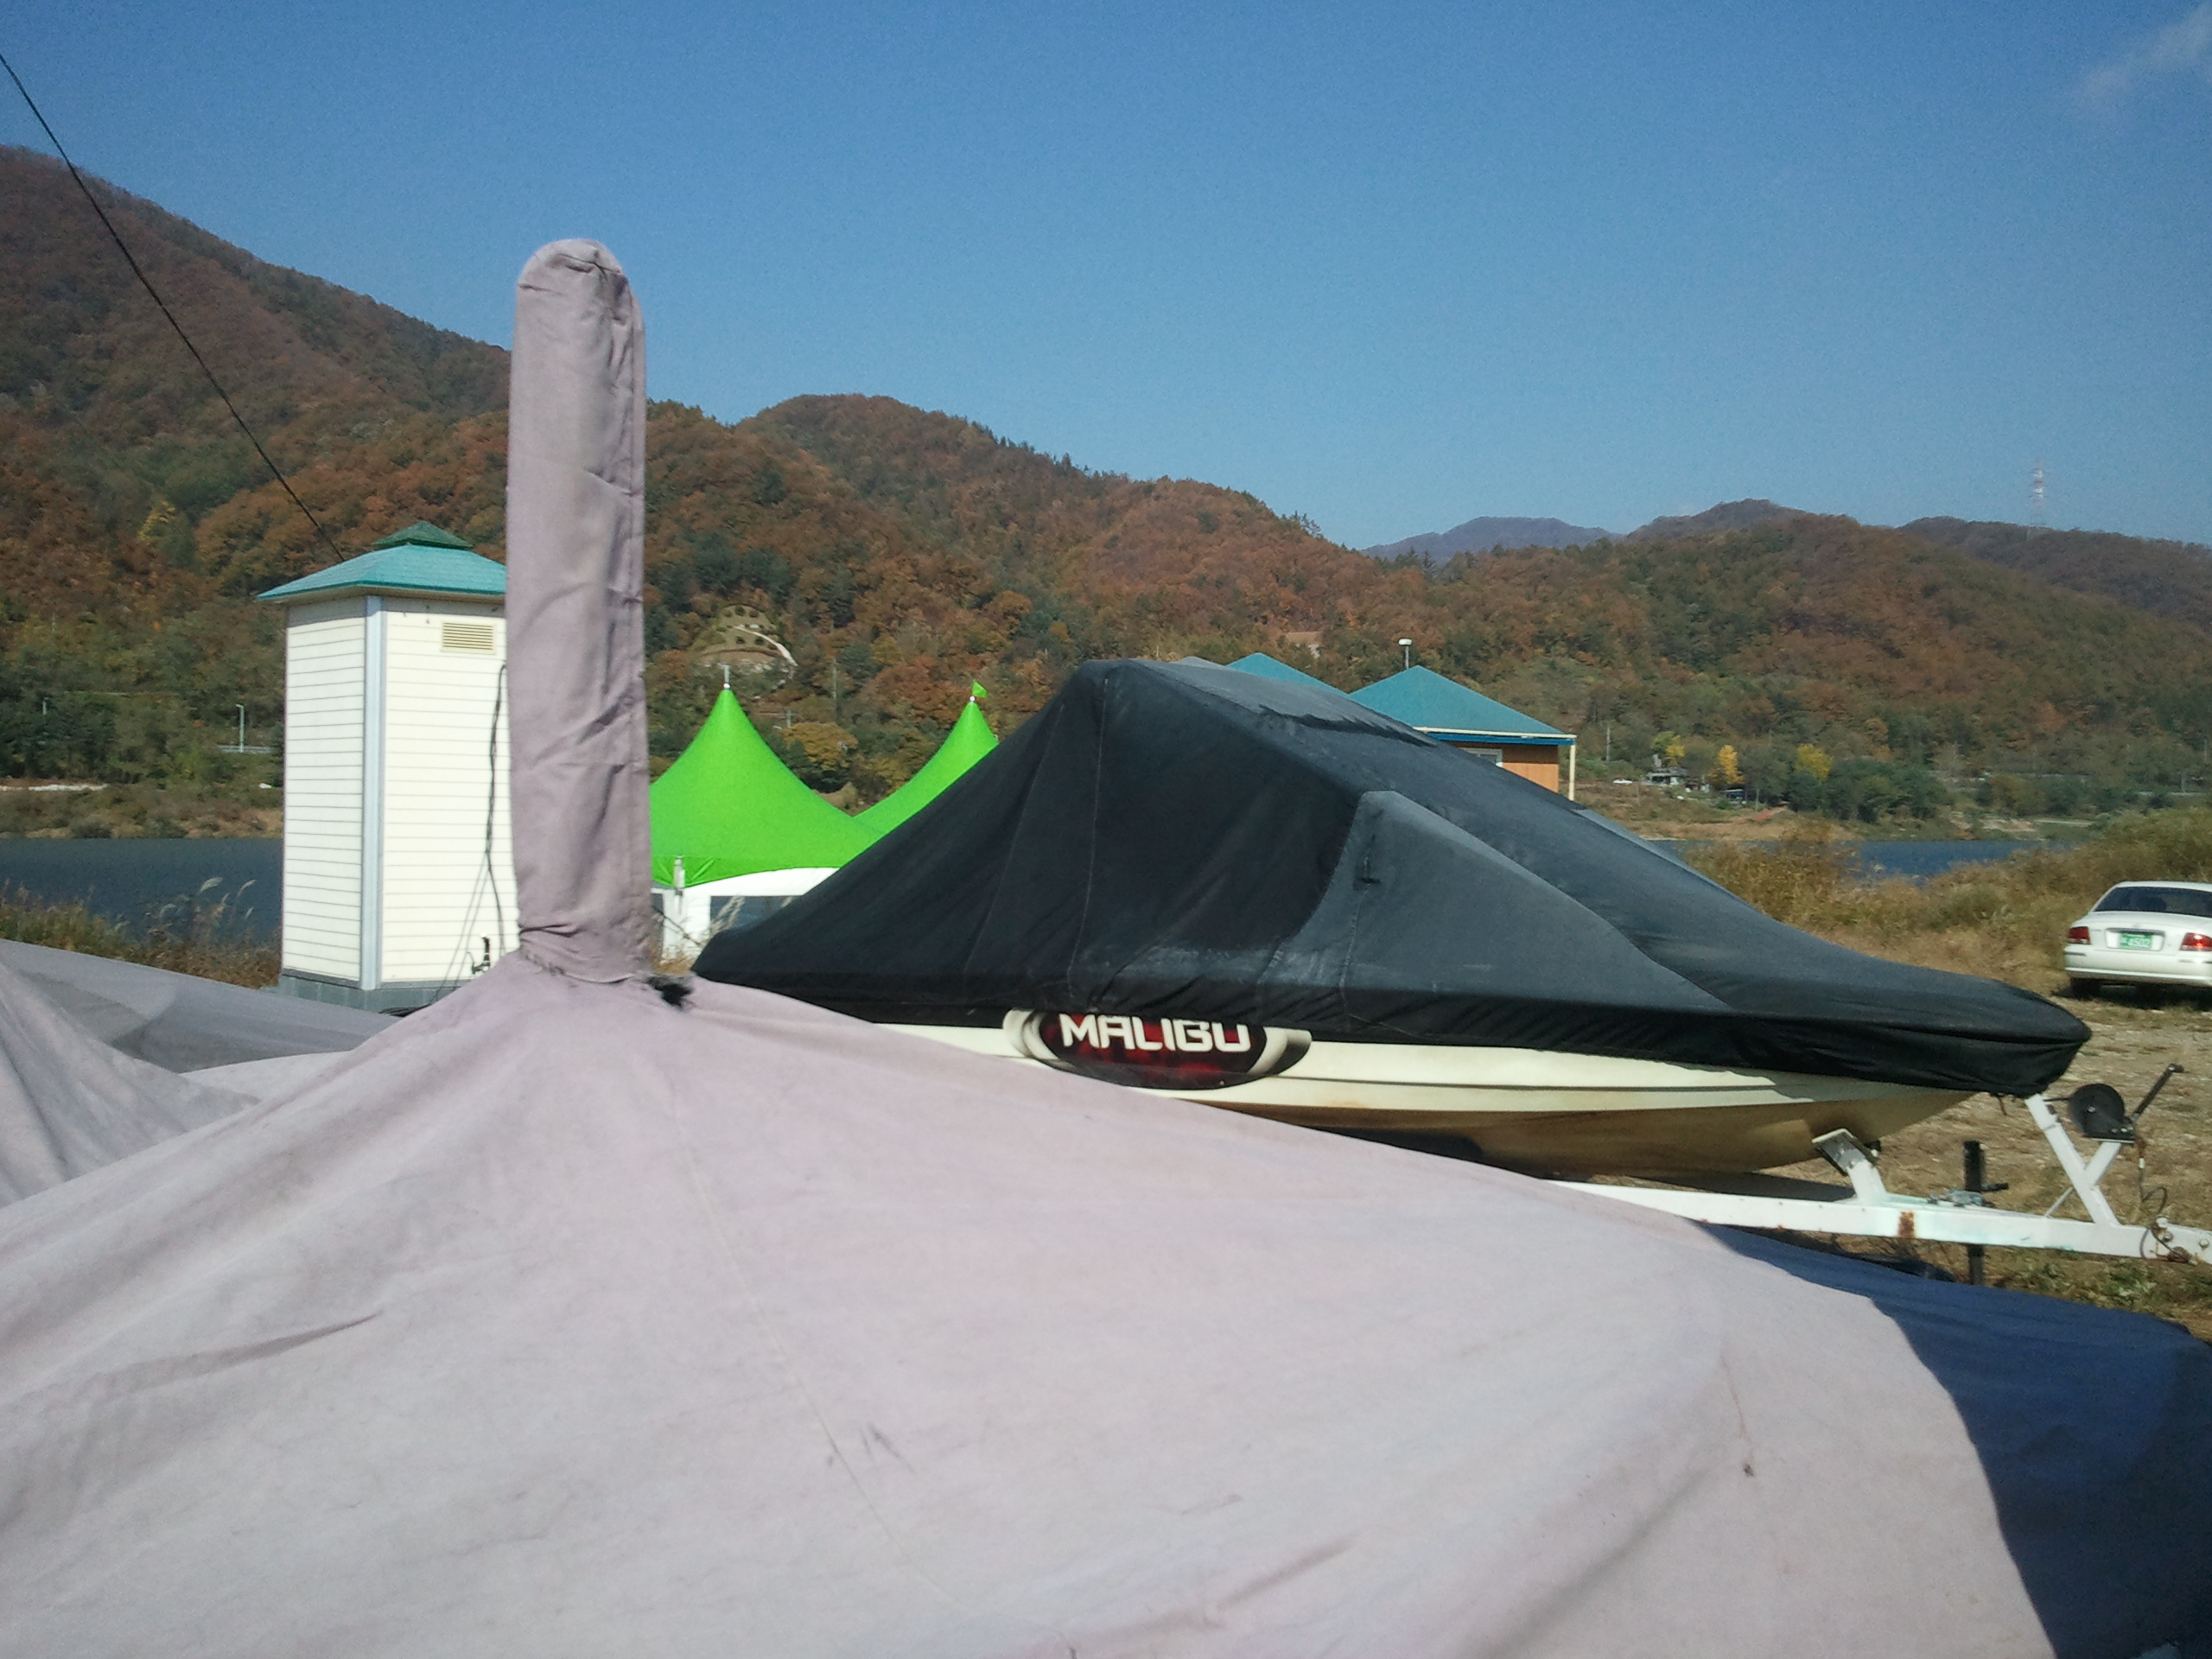 2012-10-28 11.06.07.jpg : 한햇동안 북한강을 누볏던 청평워터피아 수상스키장 모터보트들